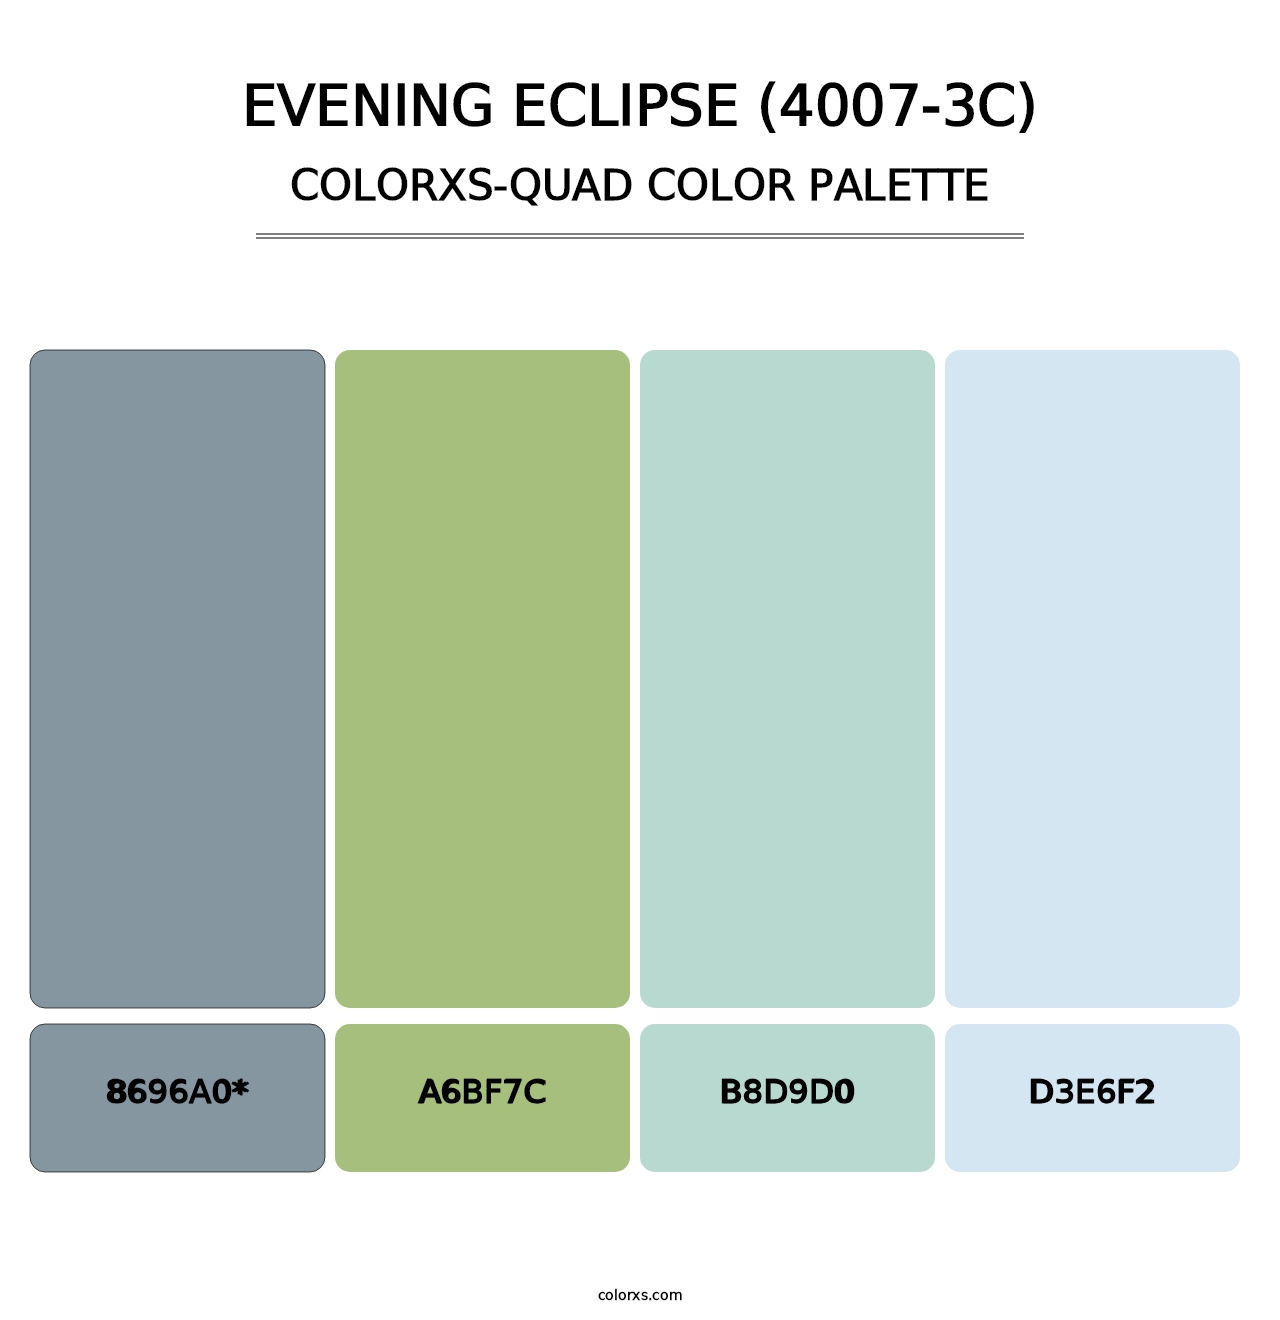 Evening Eclipse (4007-3C) - Colorxs Quad Palette